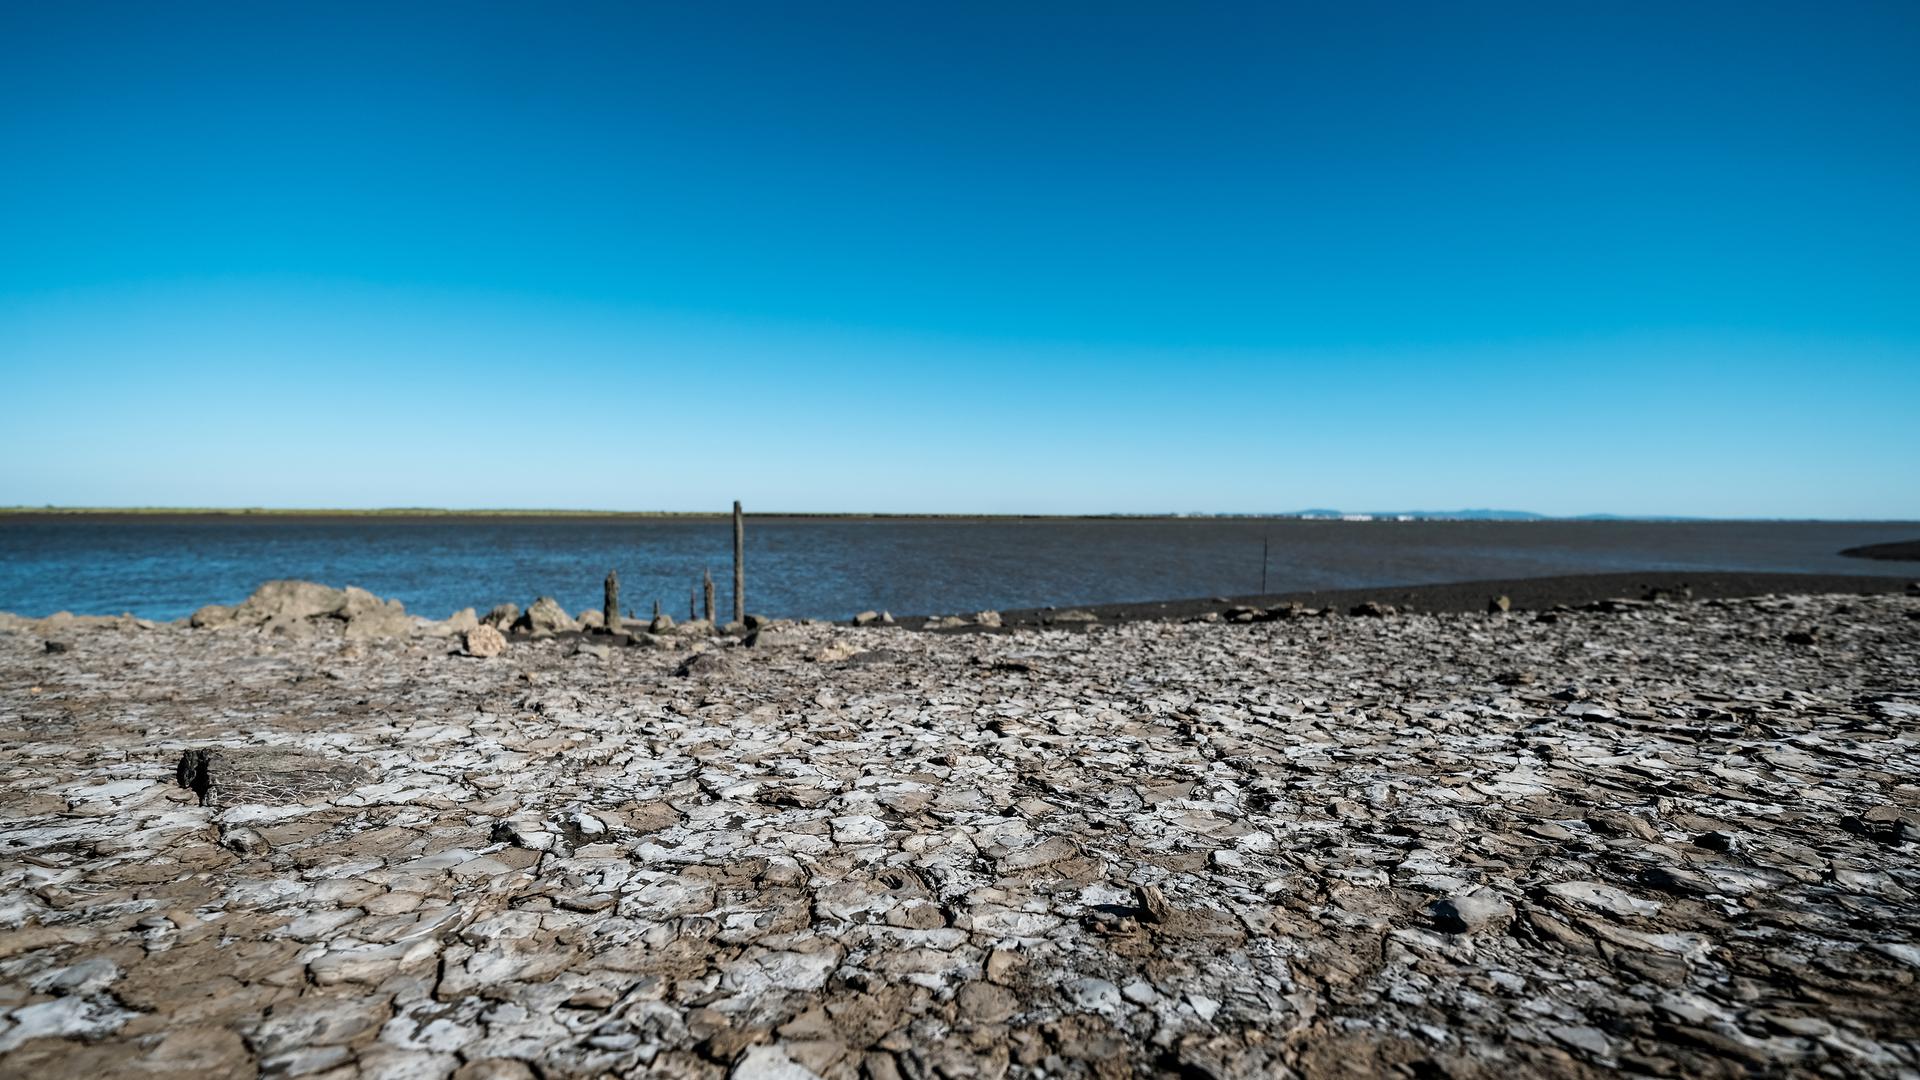 A terra está seca e salgada no lugar o Tejo recebe um dos seus afluentes, o Sorraia.